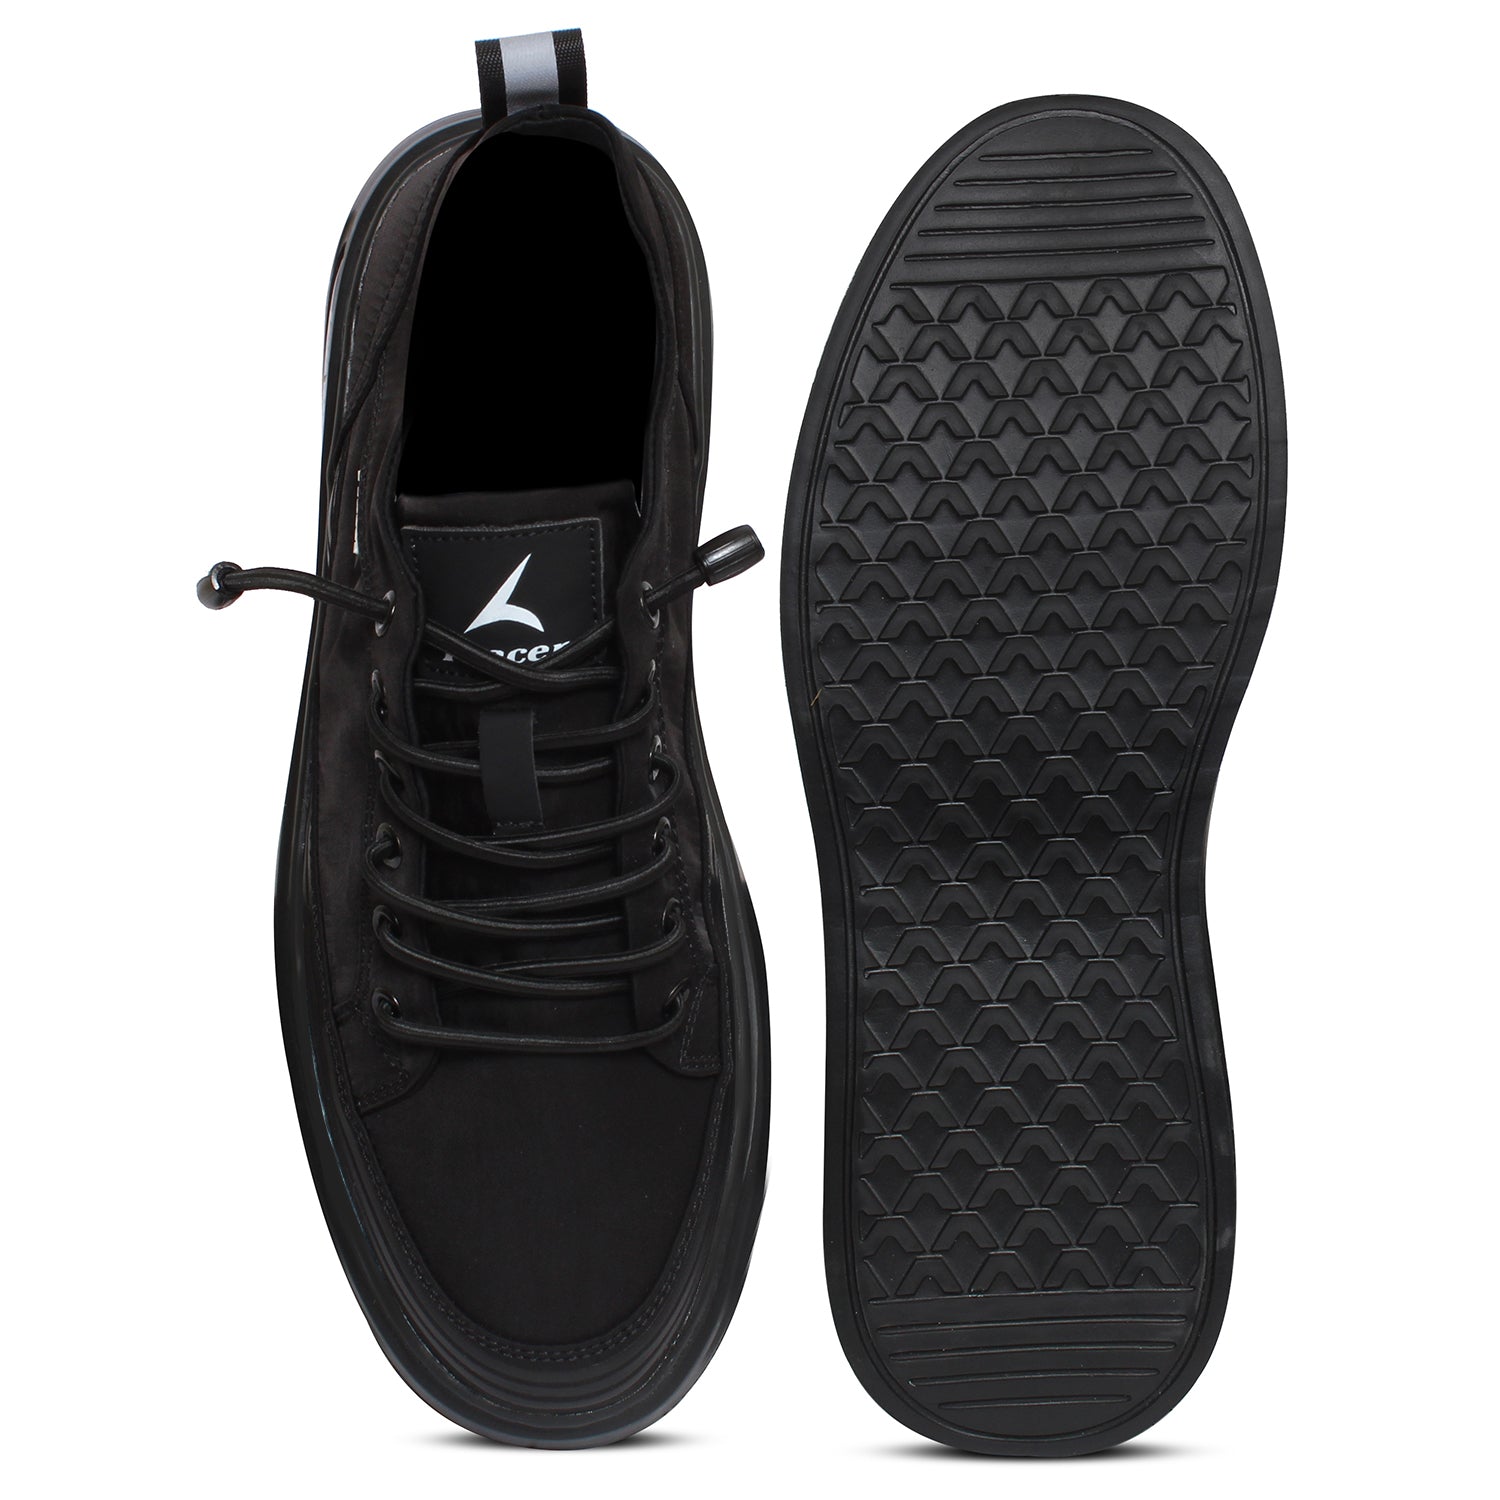 Tracer Scoosh 2714 Sneaker for Men's Black